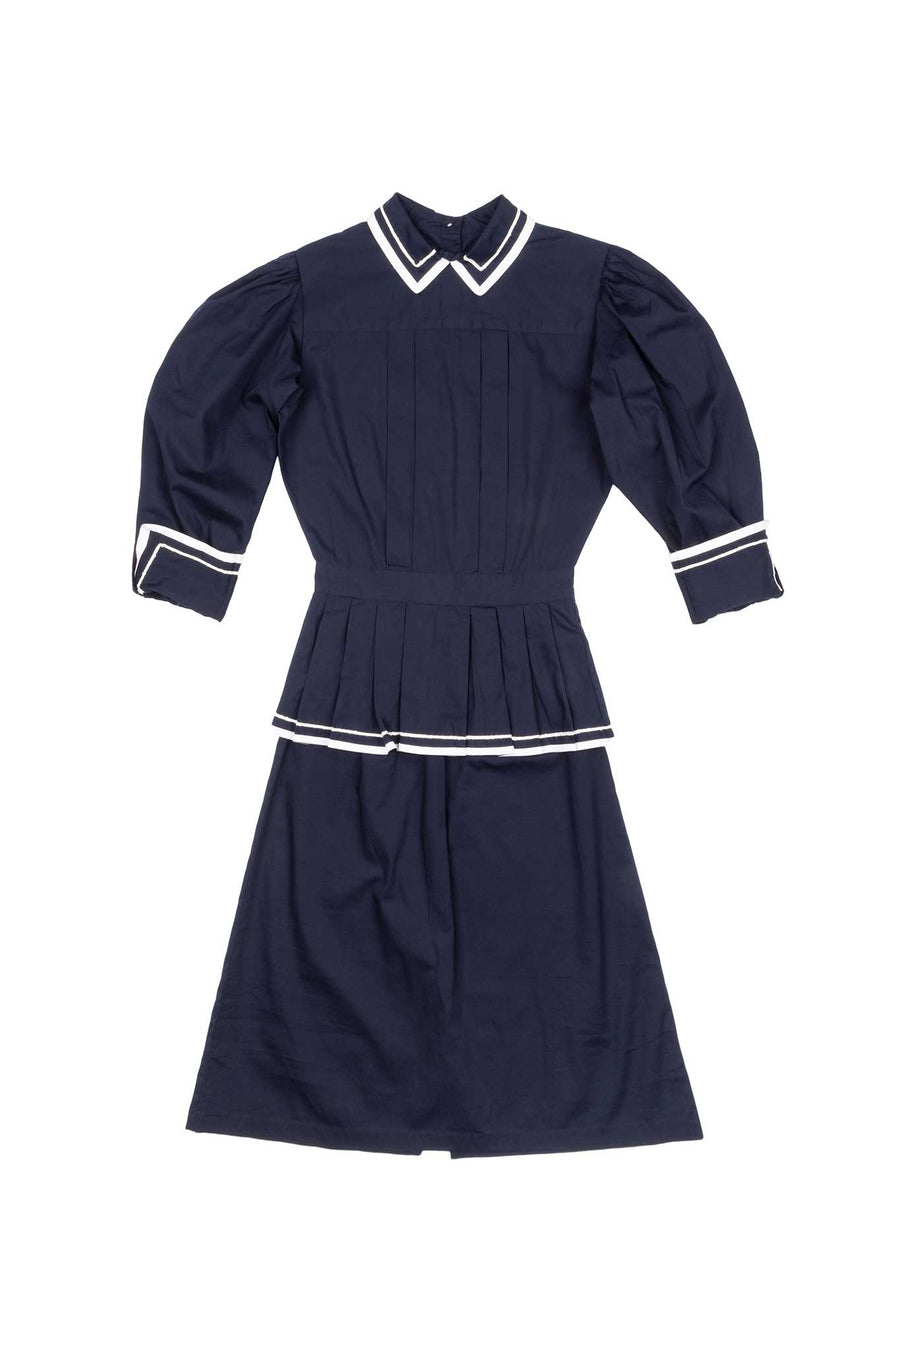 BATSHEVA - Long Sleeve Rilke Dress in Navy